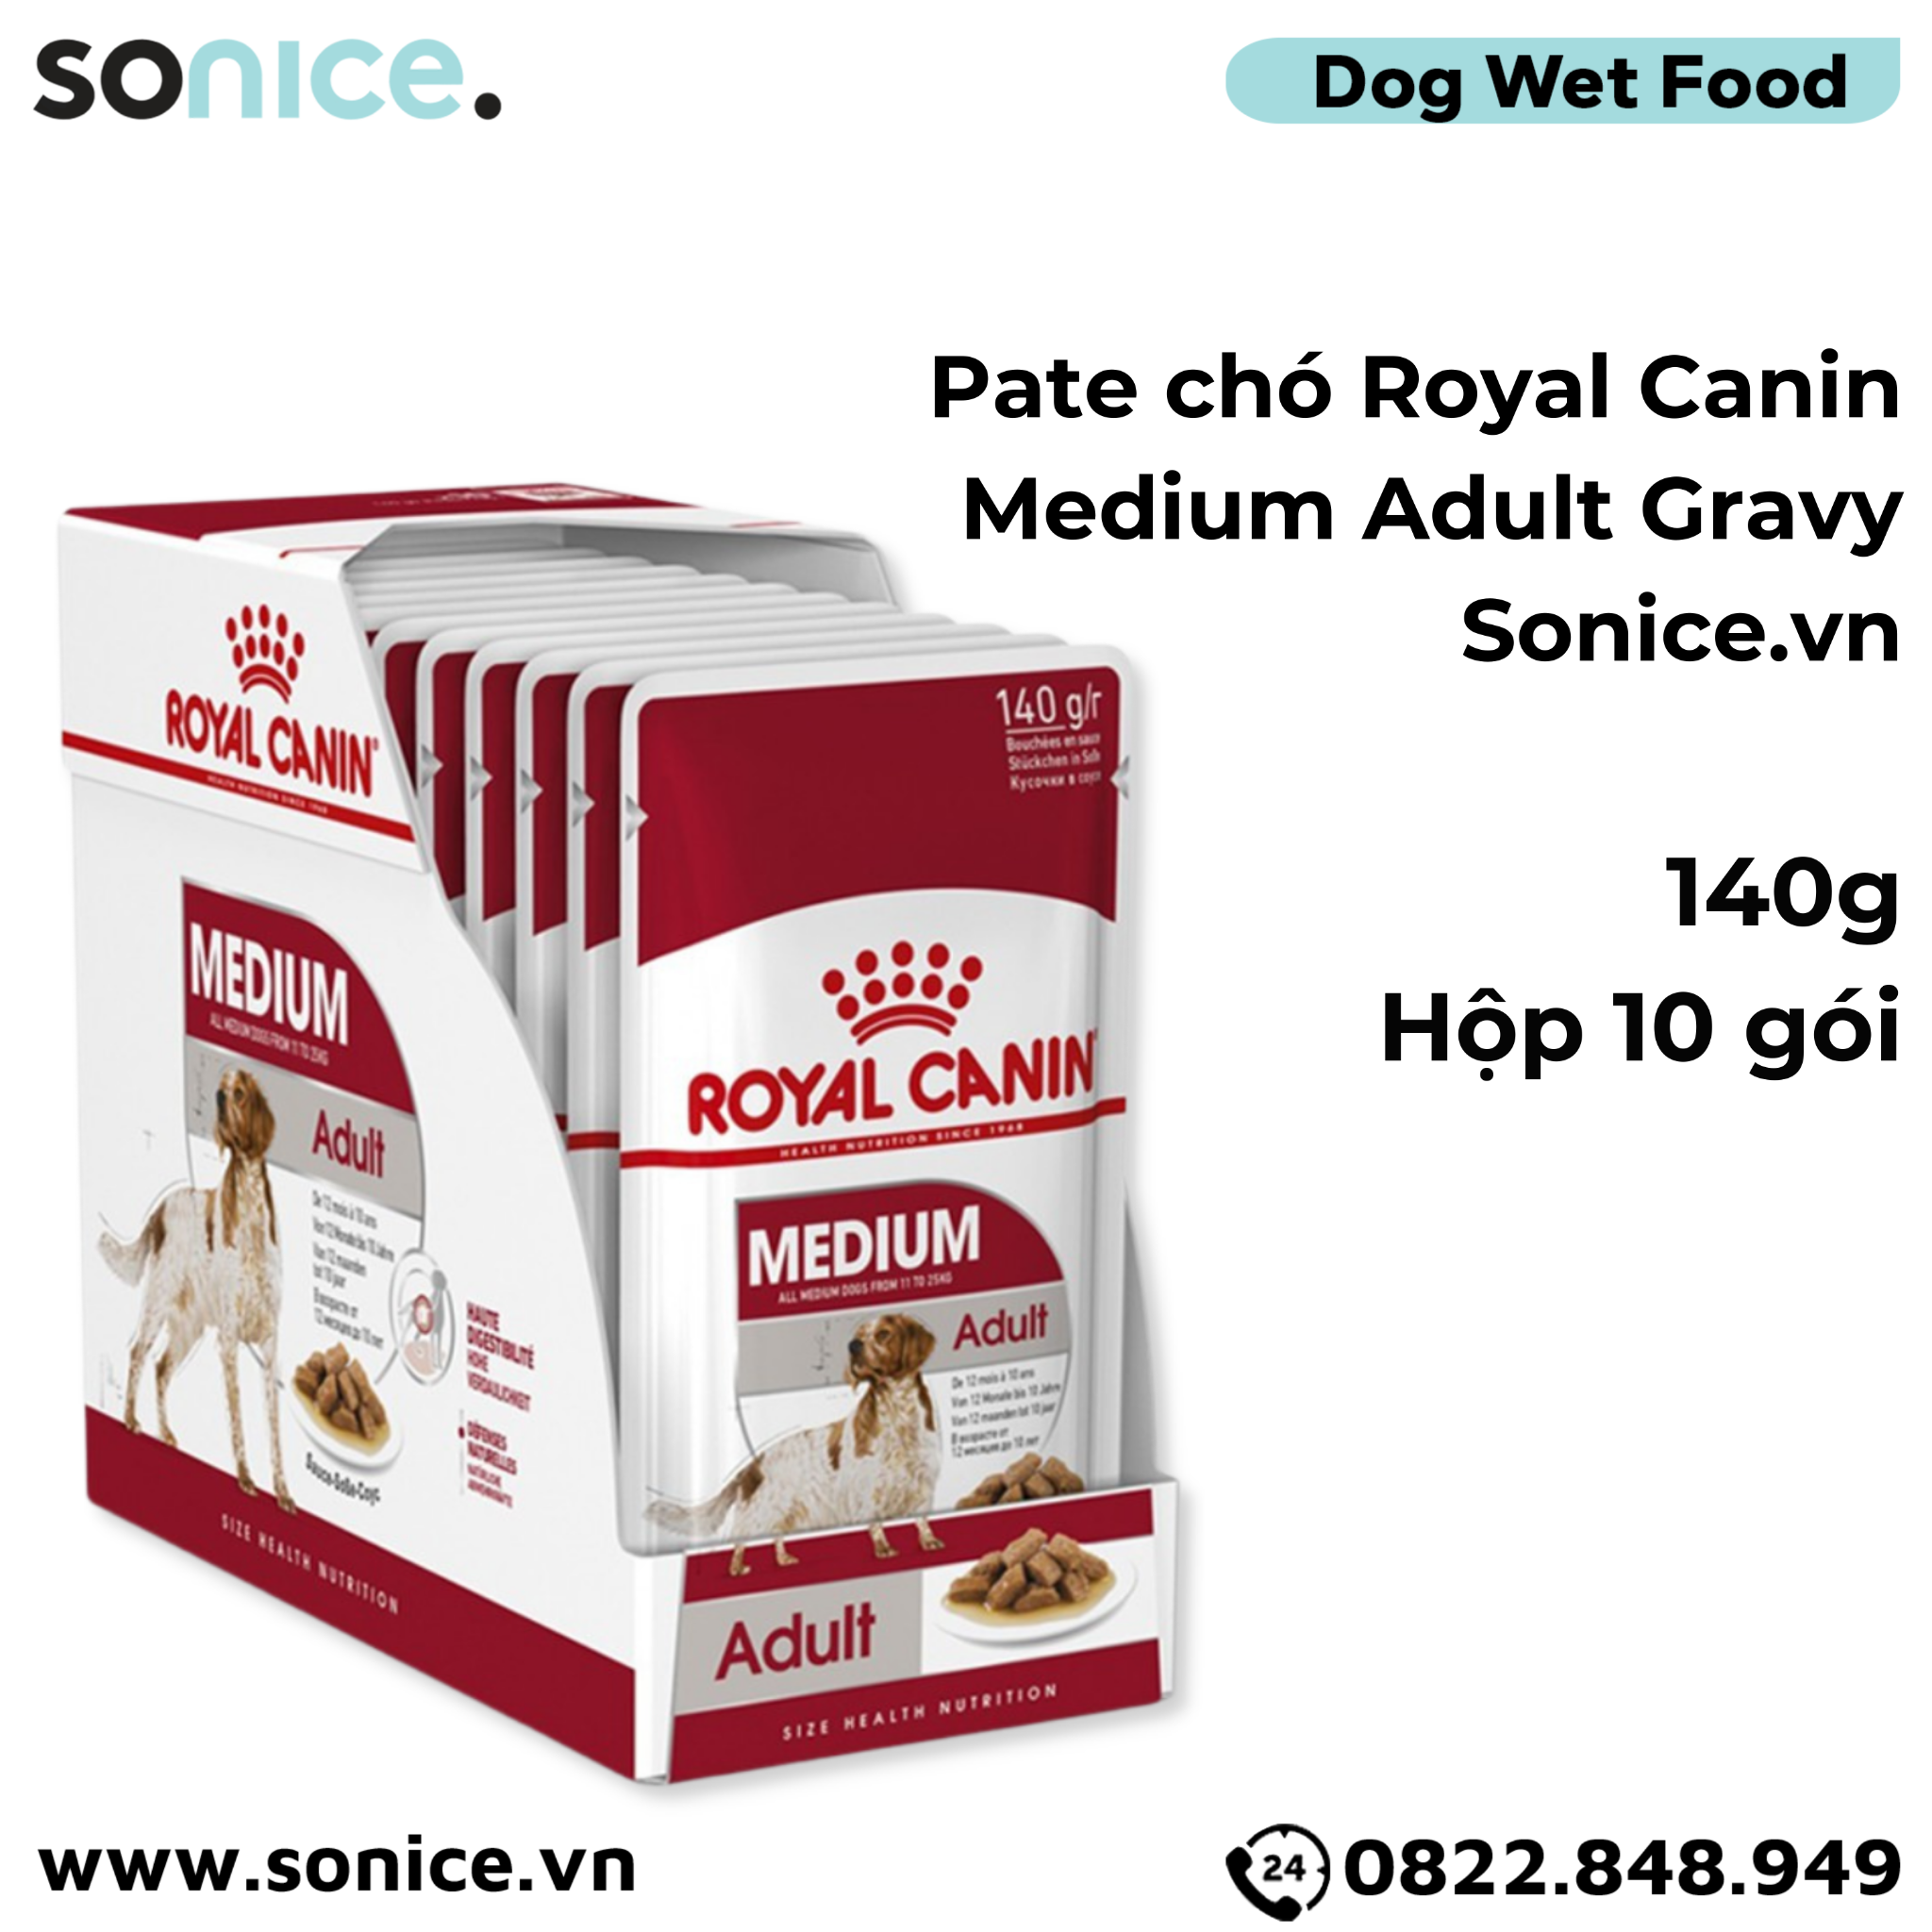  Pate chó Royal Canin Medium Adult - Gravy 1 hộp 10 gói SONICE. 